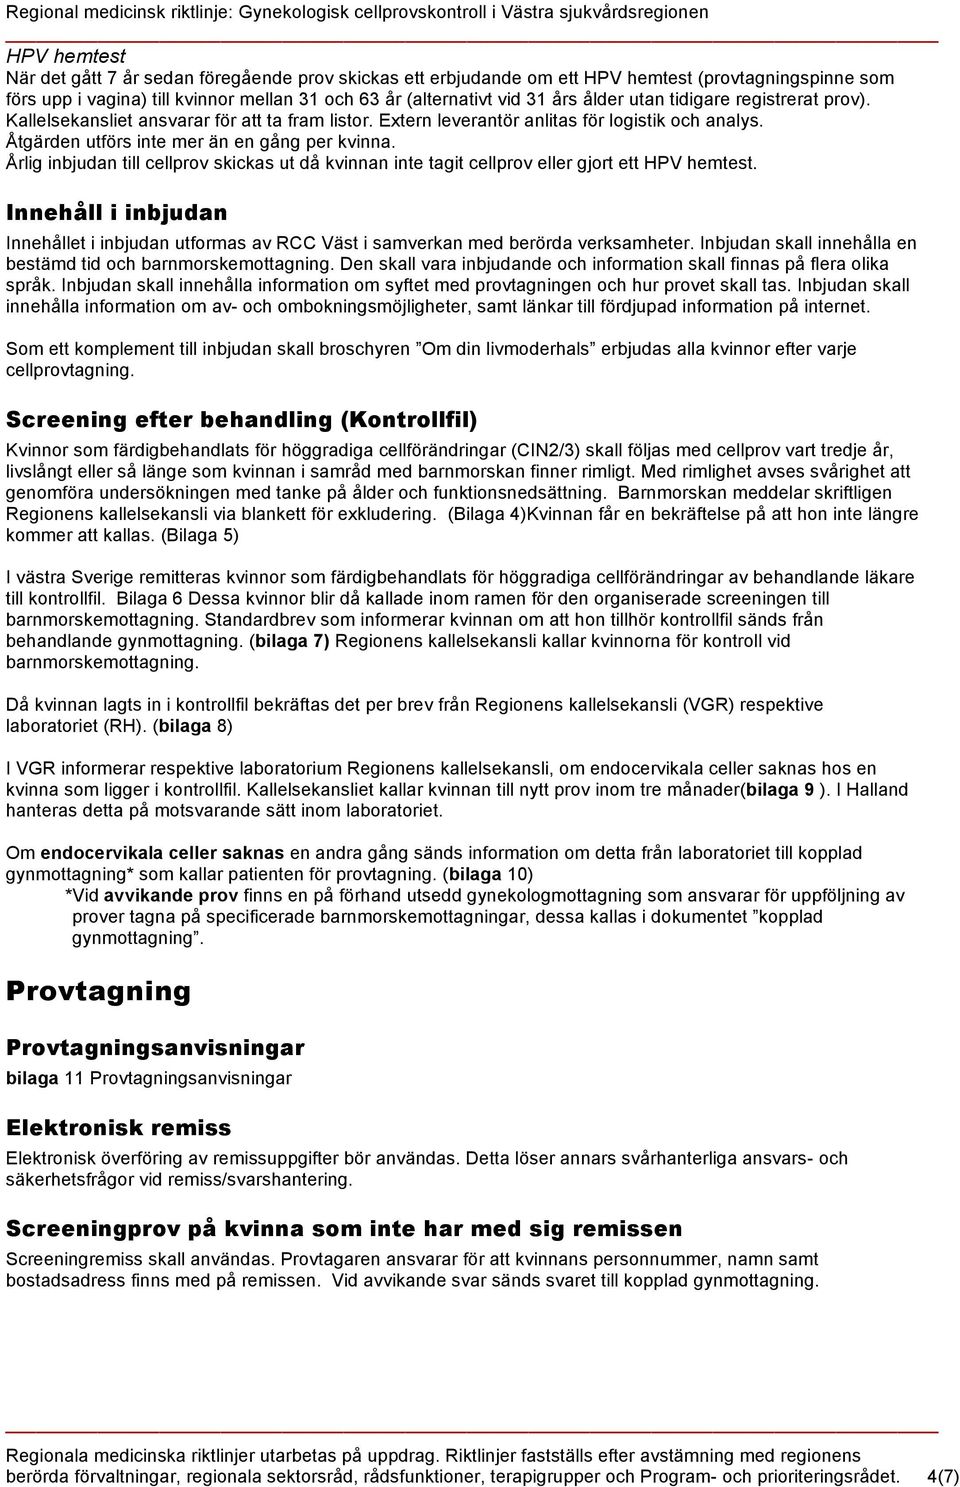 Gynekologisk cellprovskontroll i Västra sjukvårdsregionen - PDF Free  Download